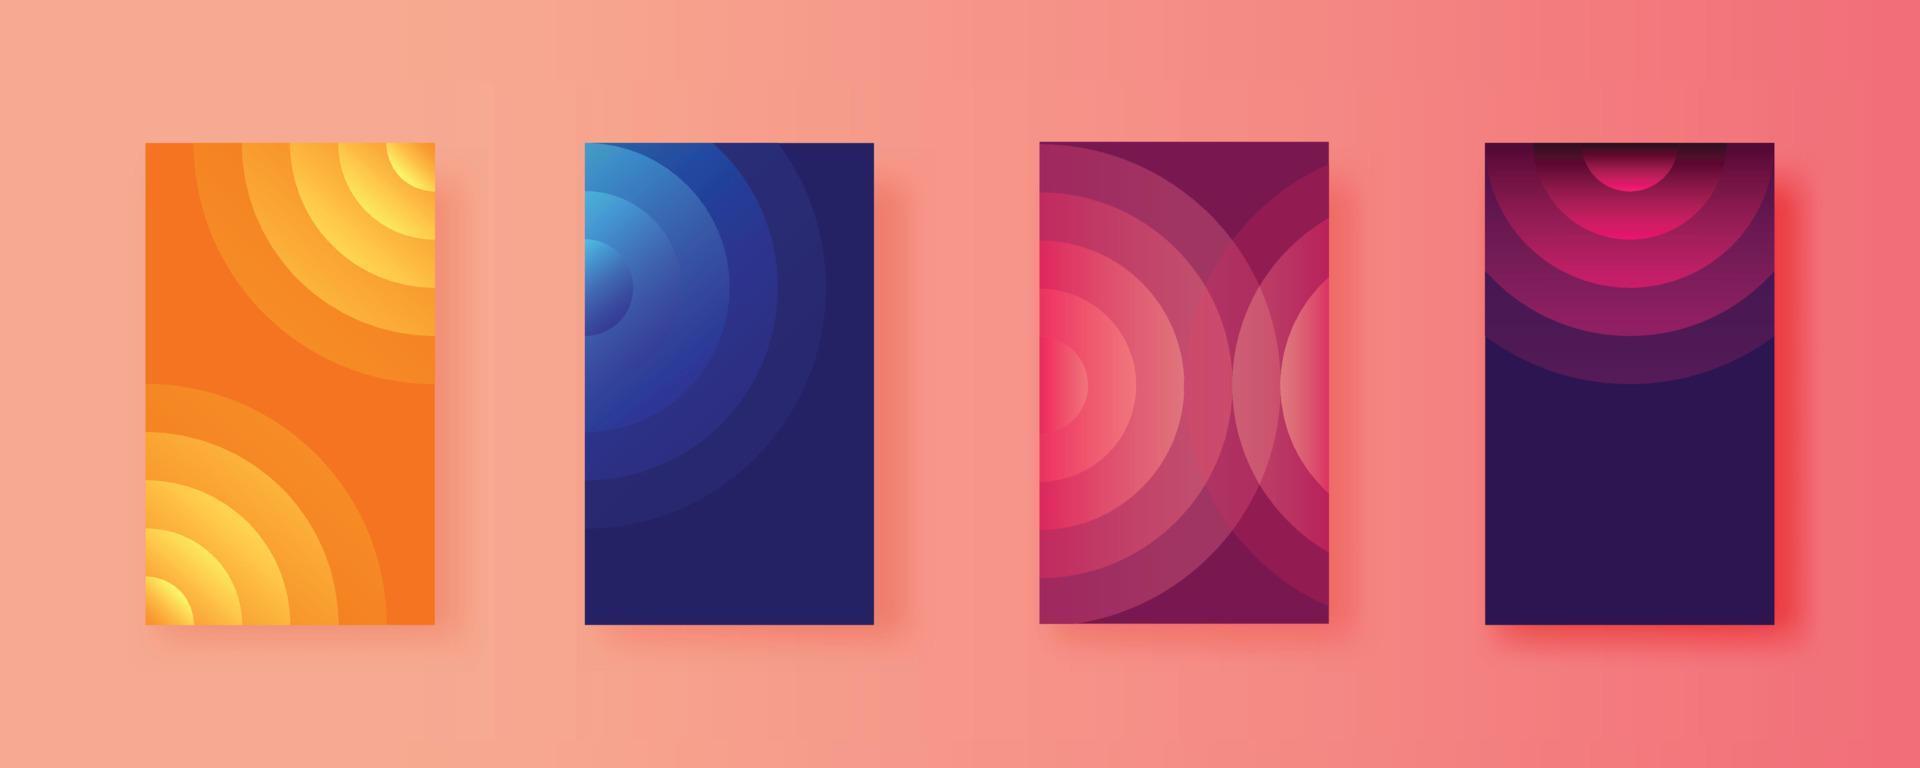 Satz abstrakter Vektorhintergrund von Kreisen mit Spiralformen und Farbabstufungen. Sammlung von gestapelten runden Linien für eine minimalistische futuristische Designabdeckung. vektor